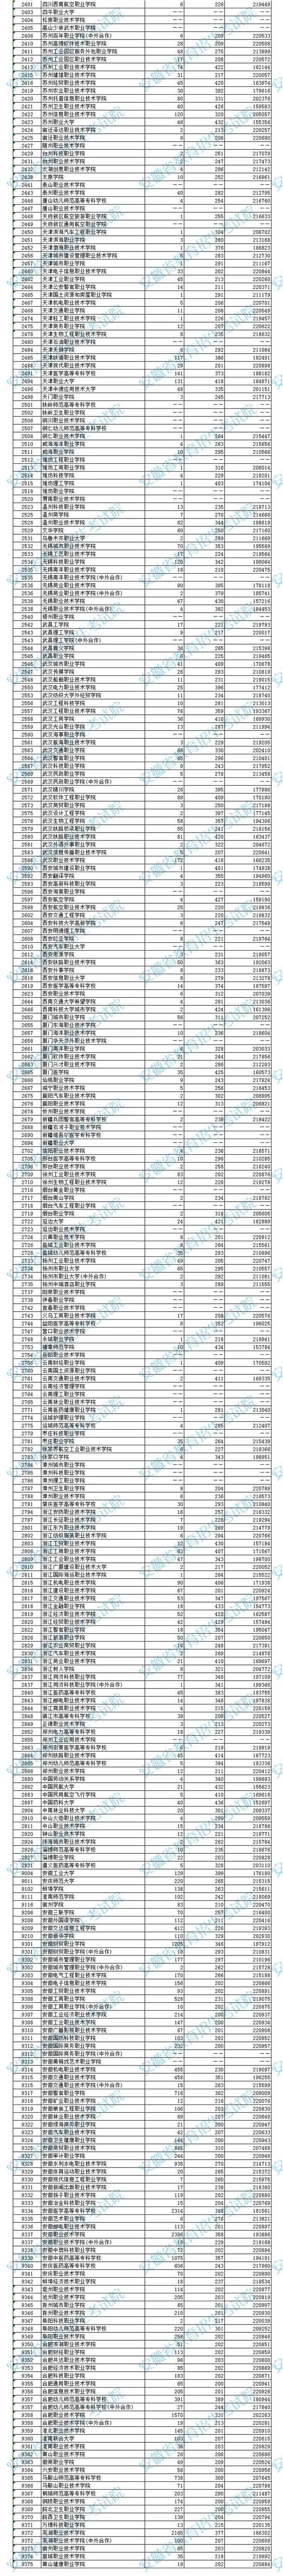 2020安徽高考专科院校理工类投档线及院校排名一览表